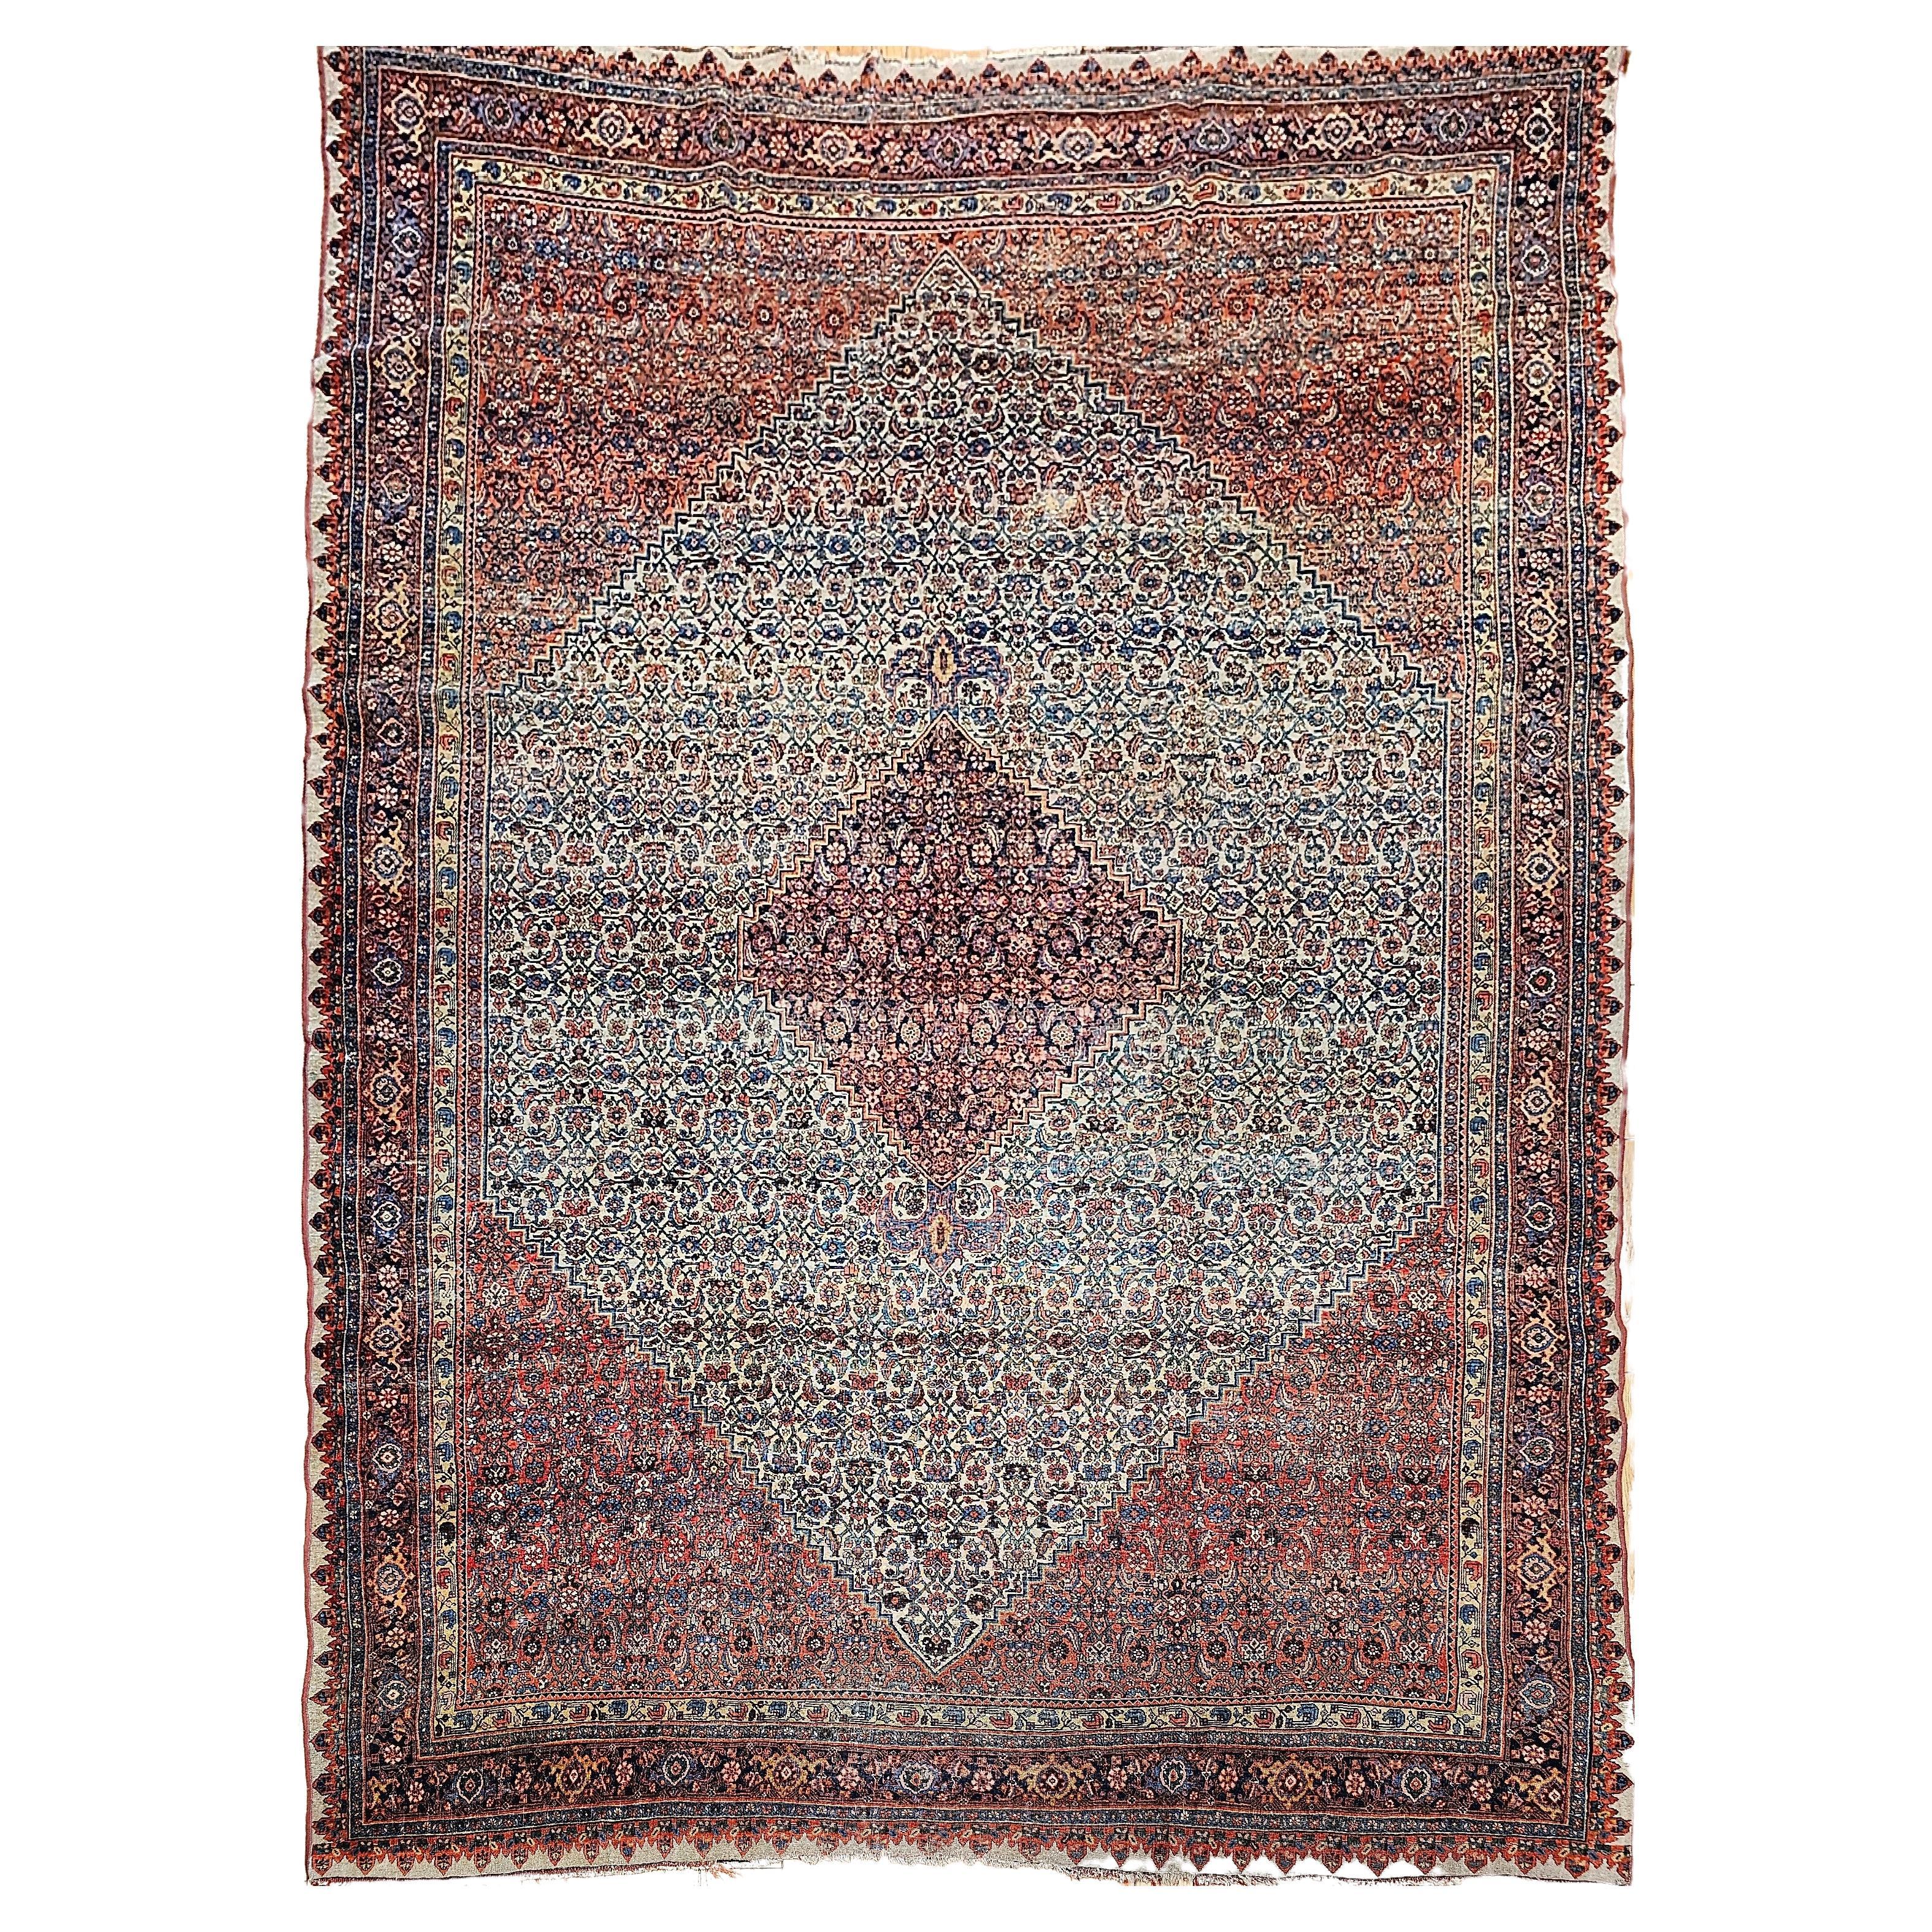 Persischer Bidjar des 19. Jahrhunderts in Herati mit geometrischem Muster in Elfenbein, Rot, Blau und Blau